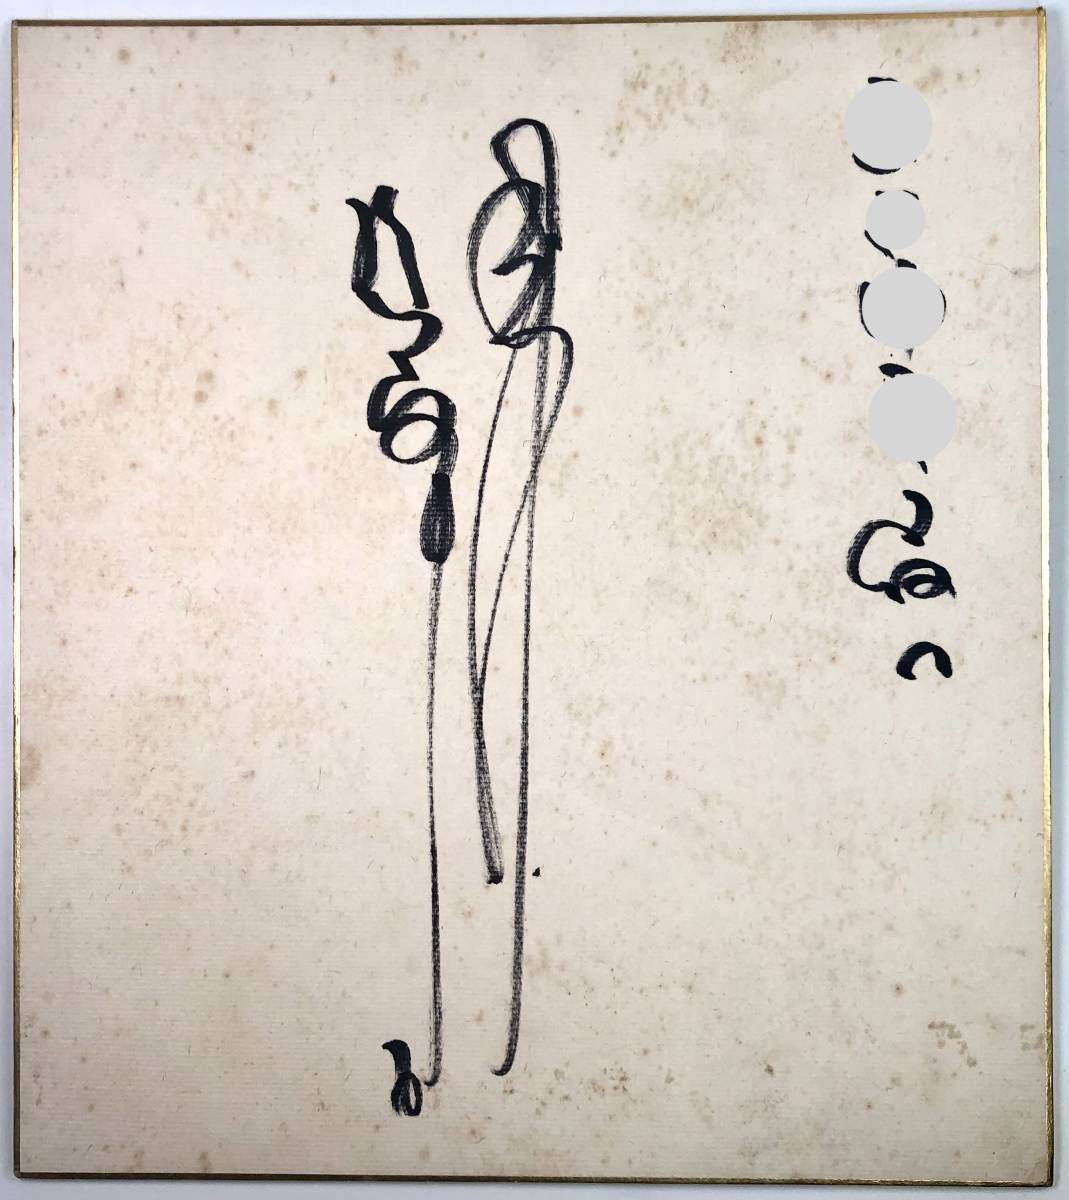 Papier coloré dédicacé par Taku Egawa (Egawa Suguru/pichet/commentateur/inscription incluse/rétro/junk), base-ball, Souvenir, Marchandises connexes, signe